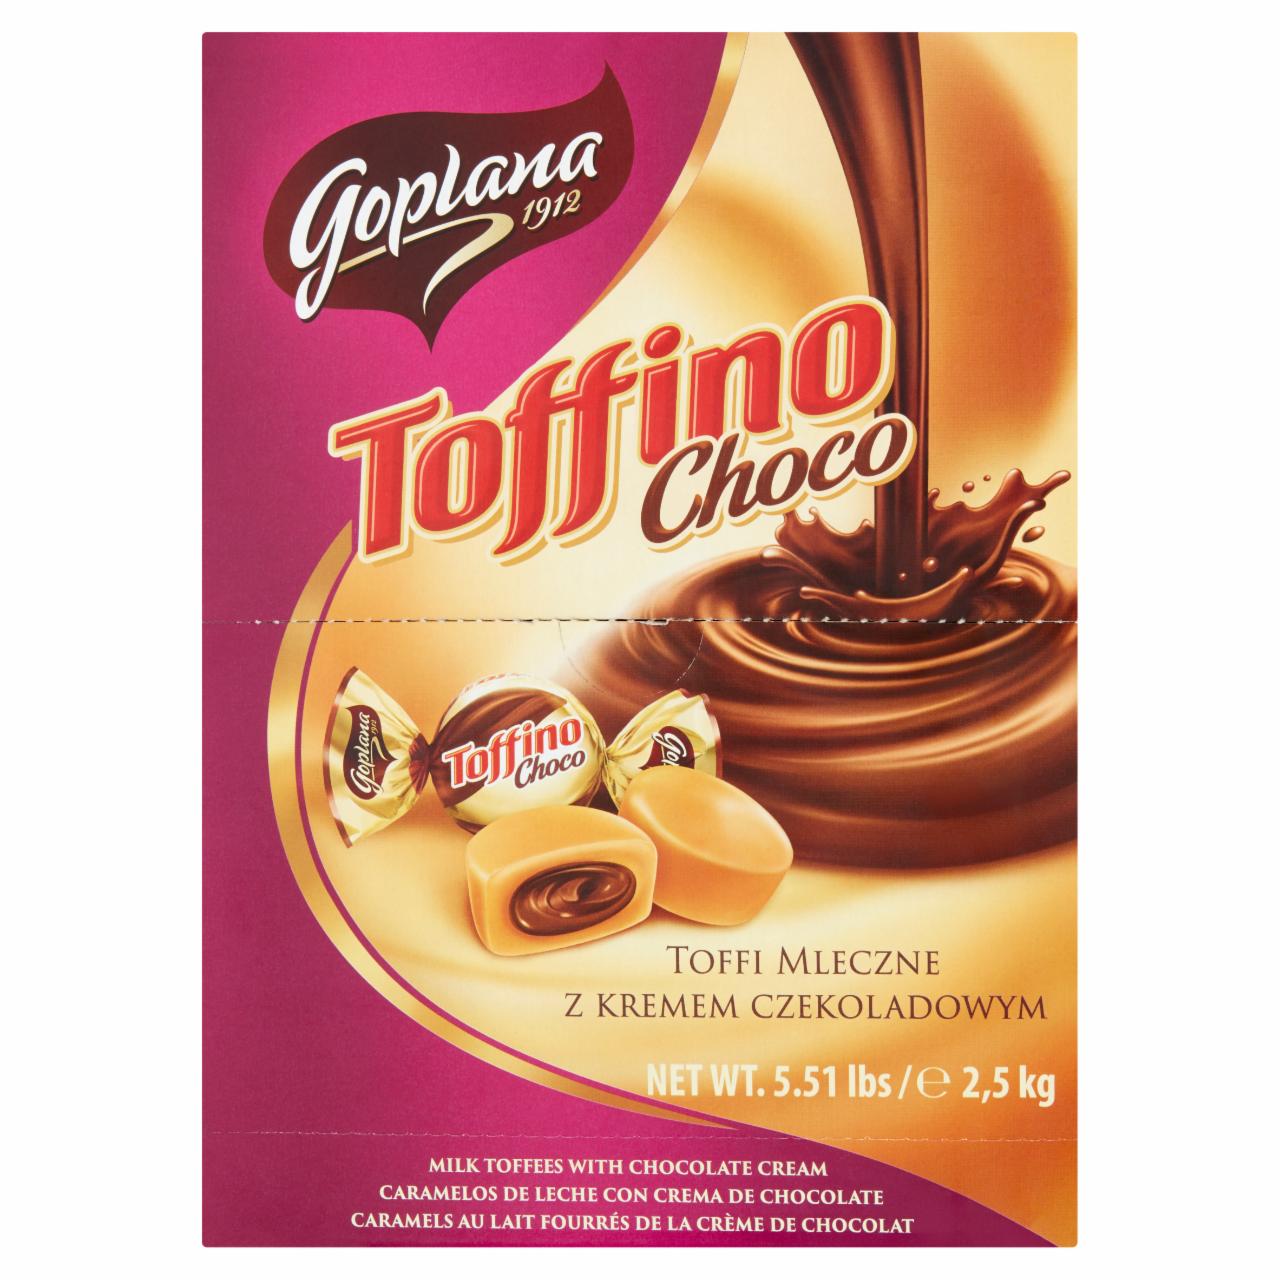 Zdjęcia - Goplana Toffino Choco Toffi mleczne z kremem czekoladowym 2,5 kg